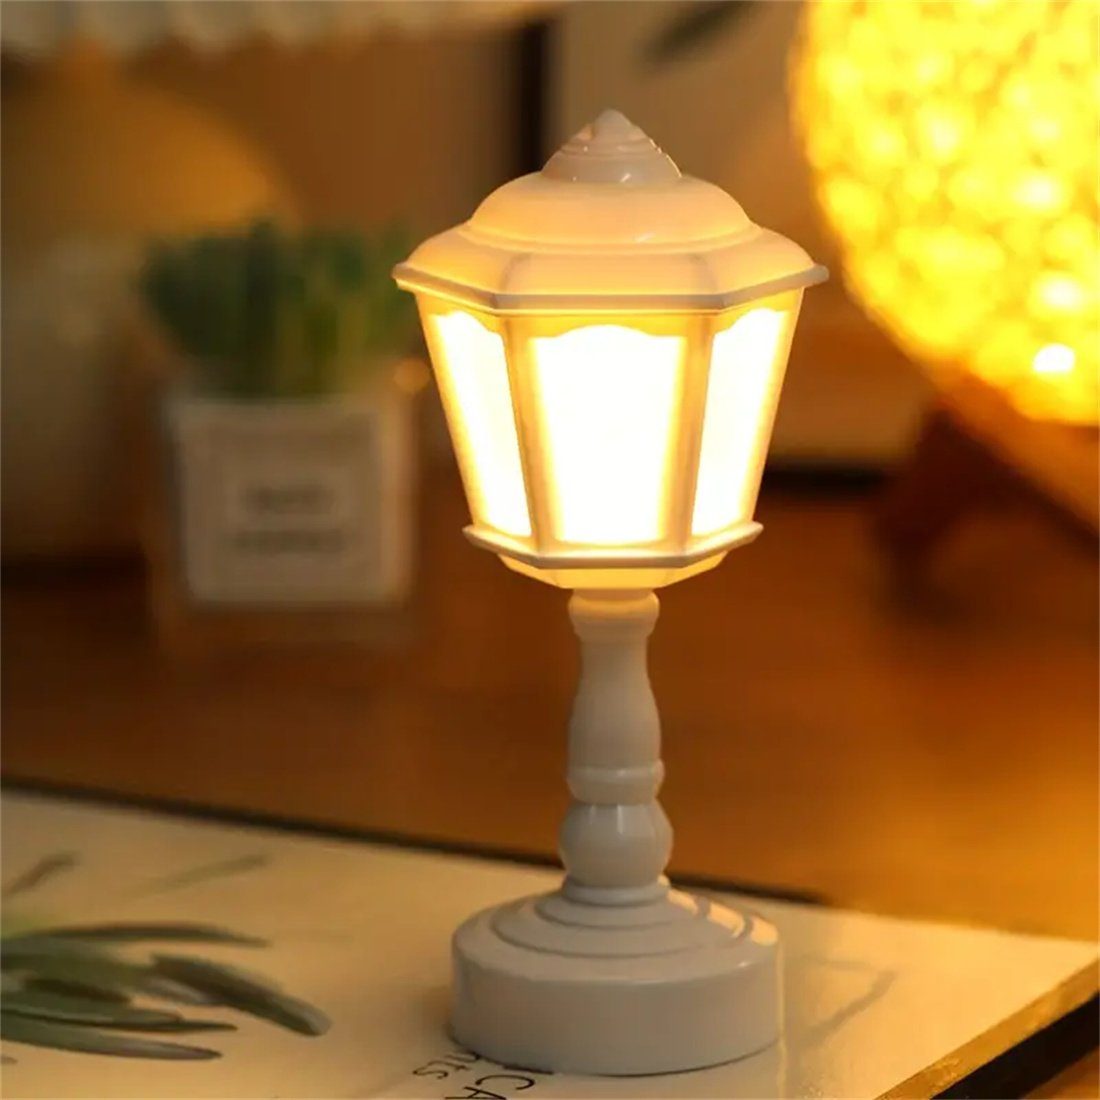 LED-Nachtlampe, DAYUT Kleine Nachtlicht Umgebungsbeleuchtung LED Tischlampe, Vintage